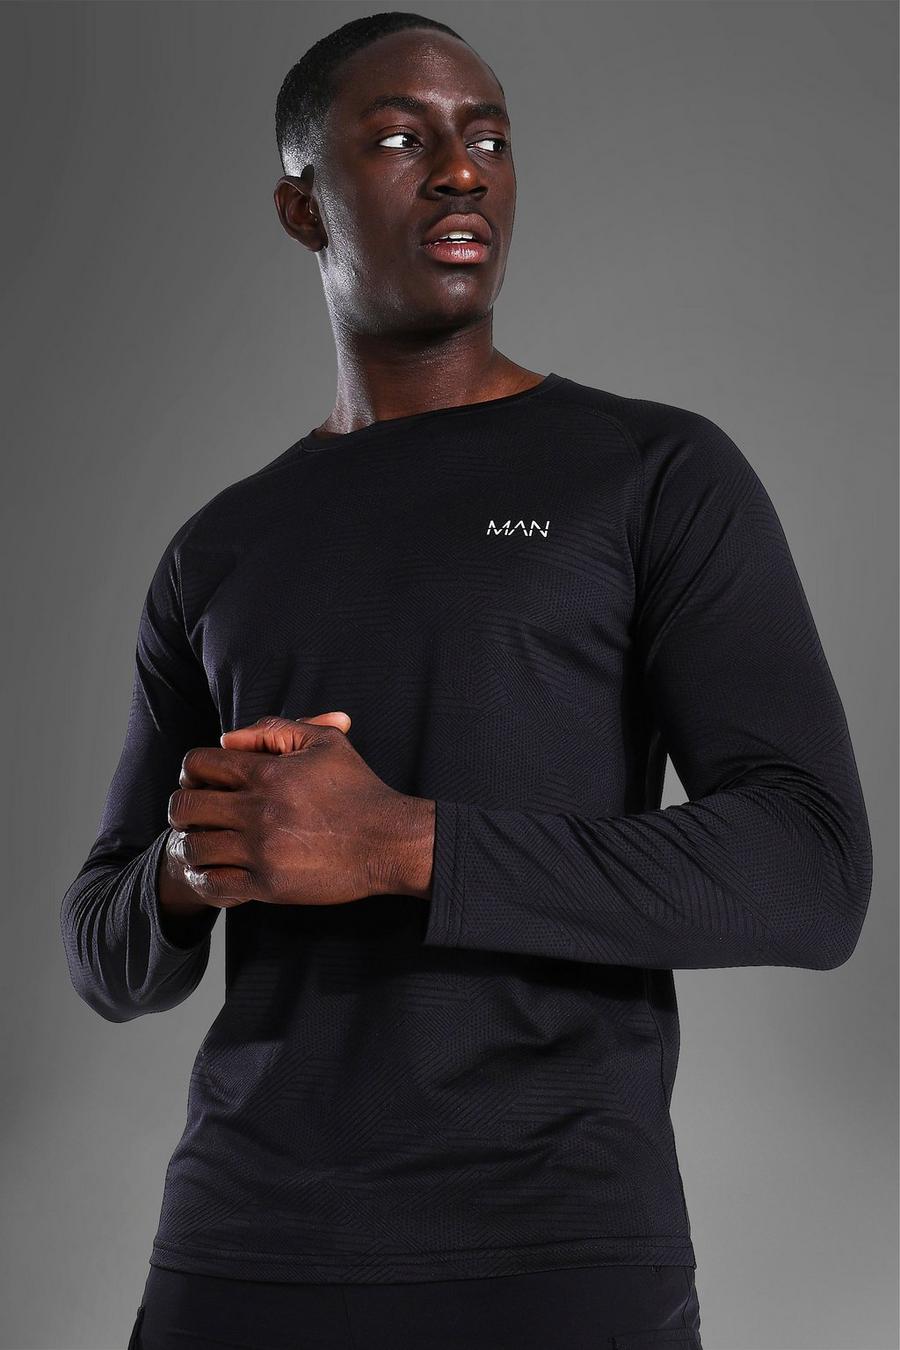 שחור חולצת רגלן ספורטיבית עם שרוולים ארוכים, עיטור תבניות וכיתוב Man image number 1